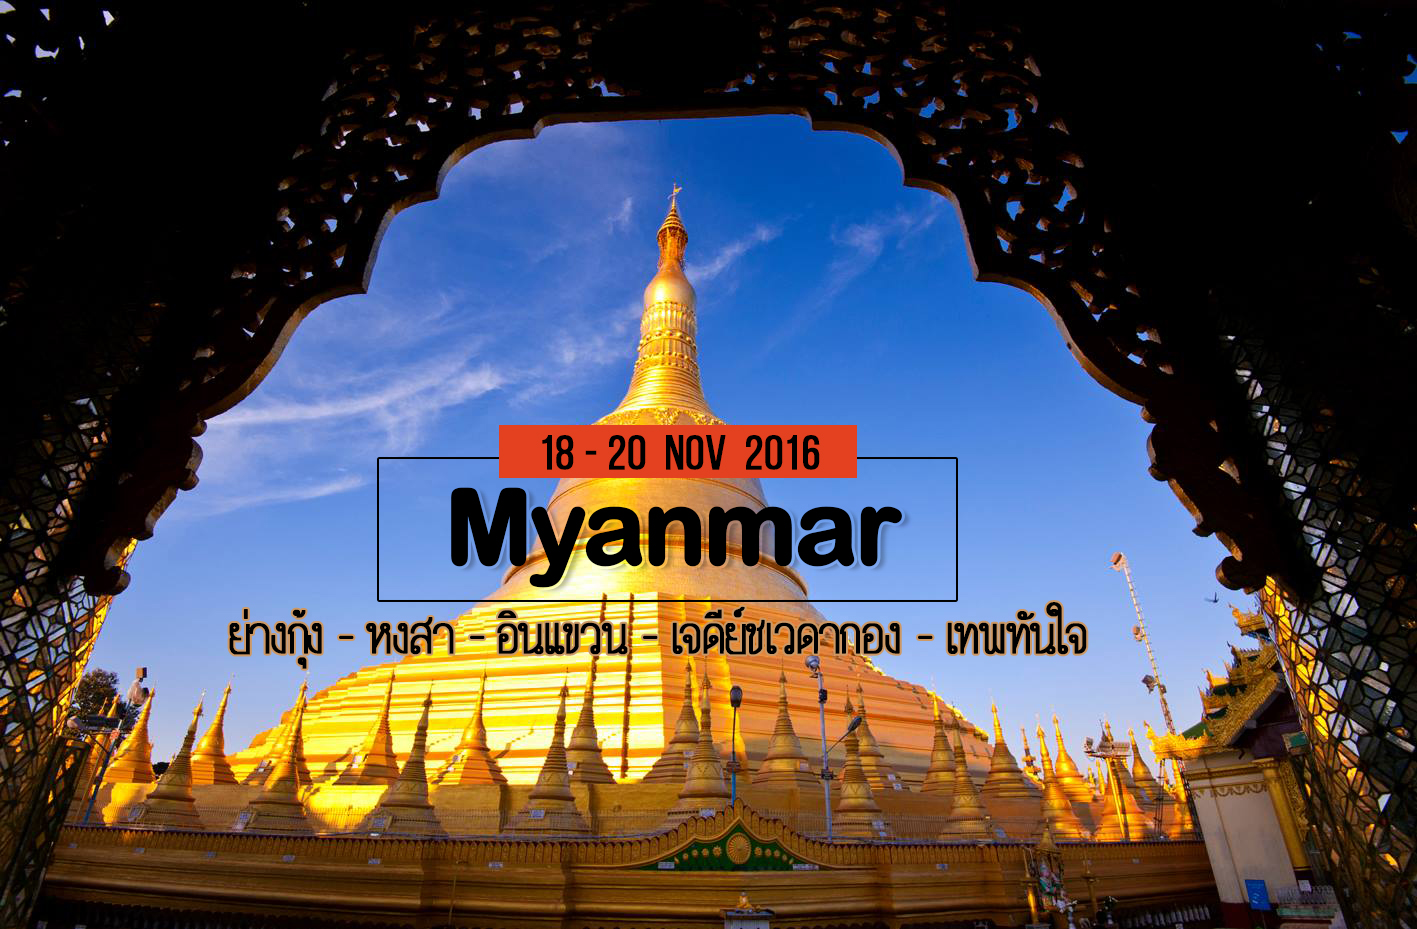 ภาพประทับใจ เที่ยวพม่า ย่างกุ้ง 18 - 20 Nov 2016